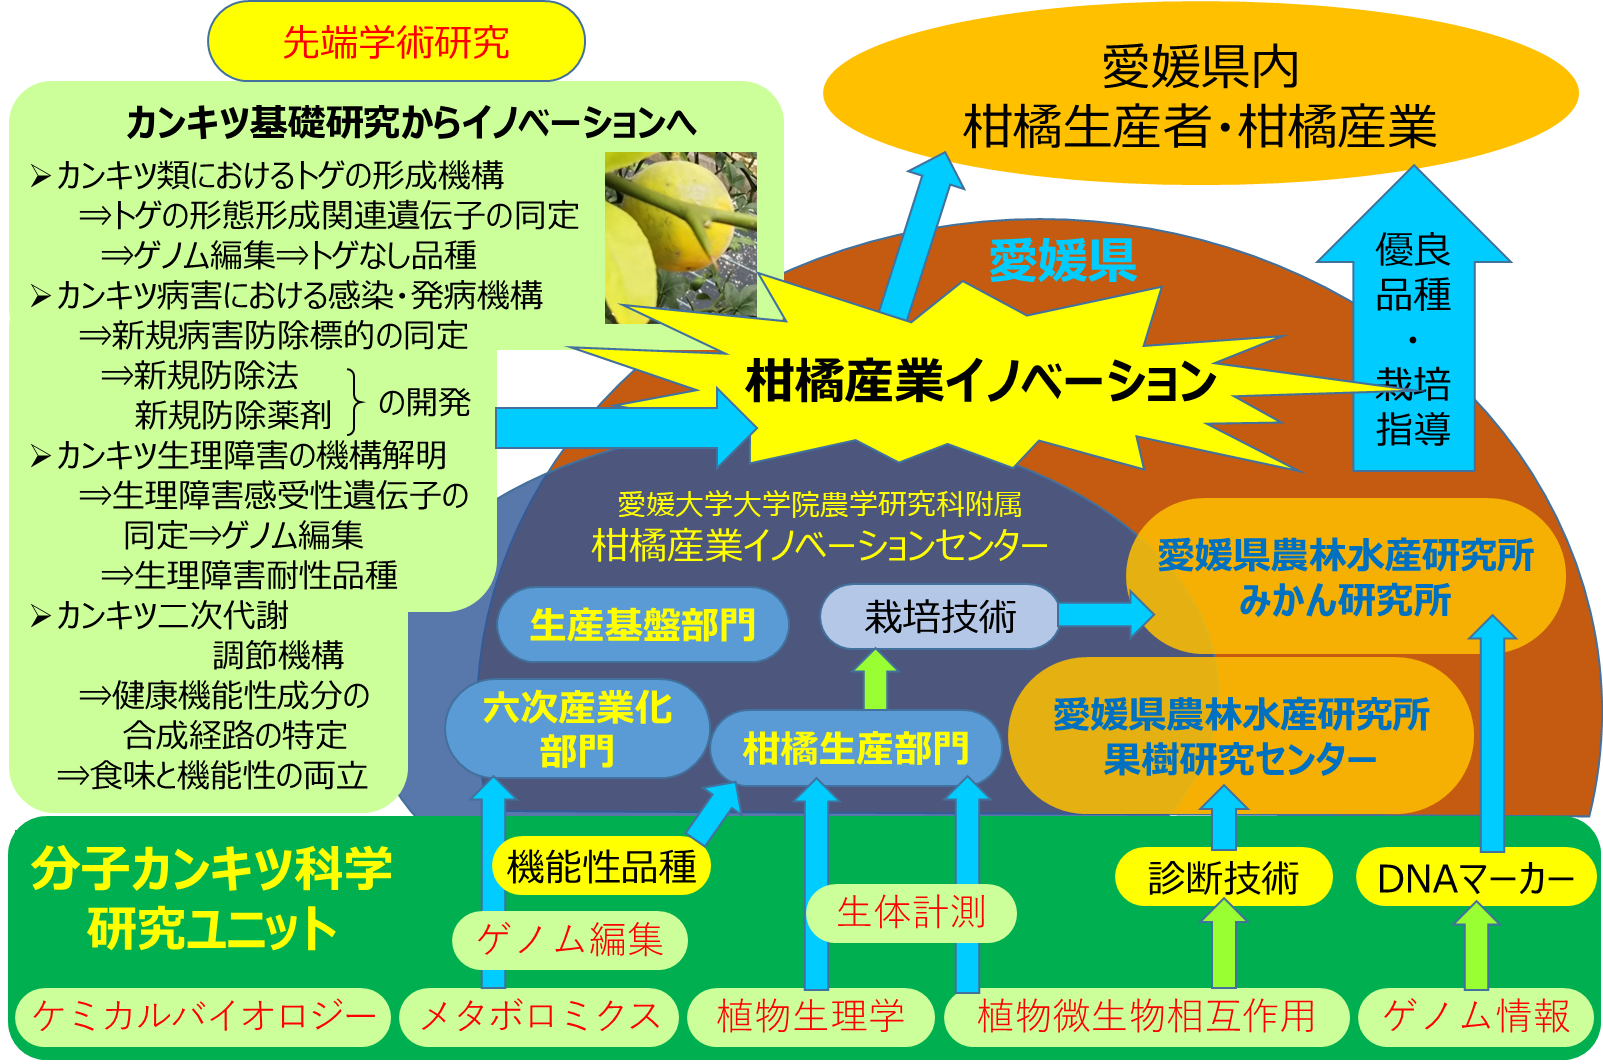 柑橘産業イノベーションセンターや愛媛県農林水産研究所の活動